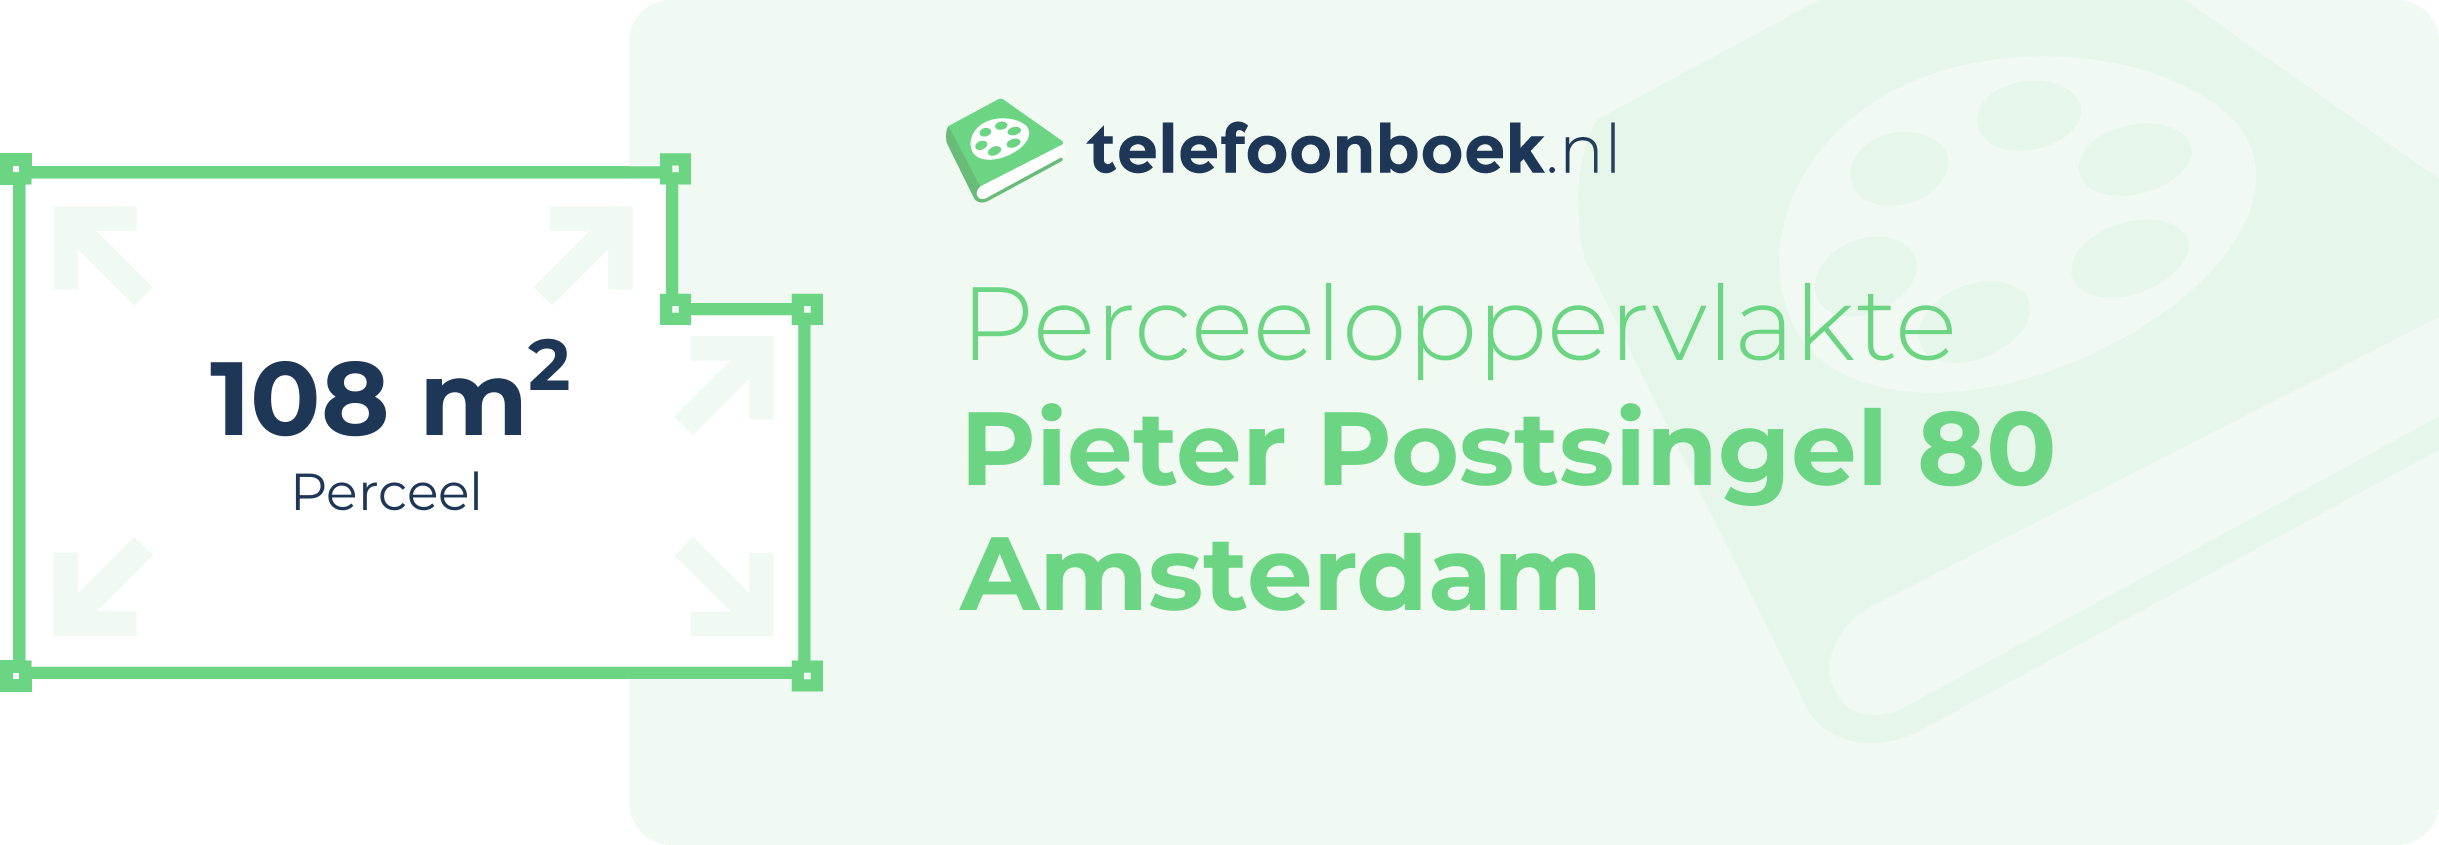 Perceeloppervlakte Pieter Postsingel 80 Amsterdam